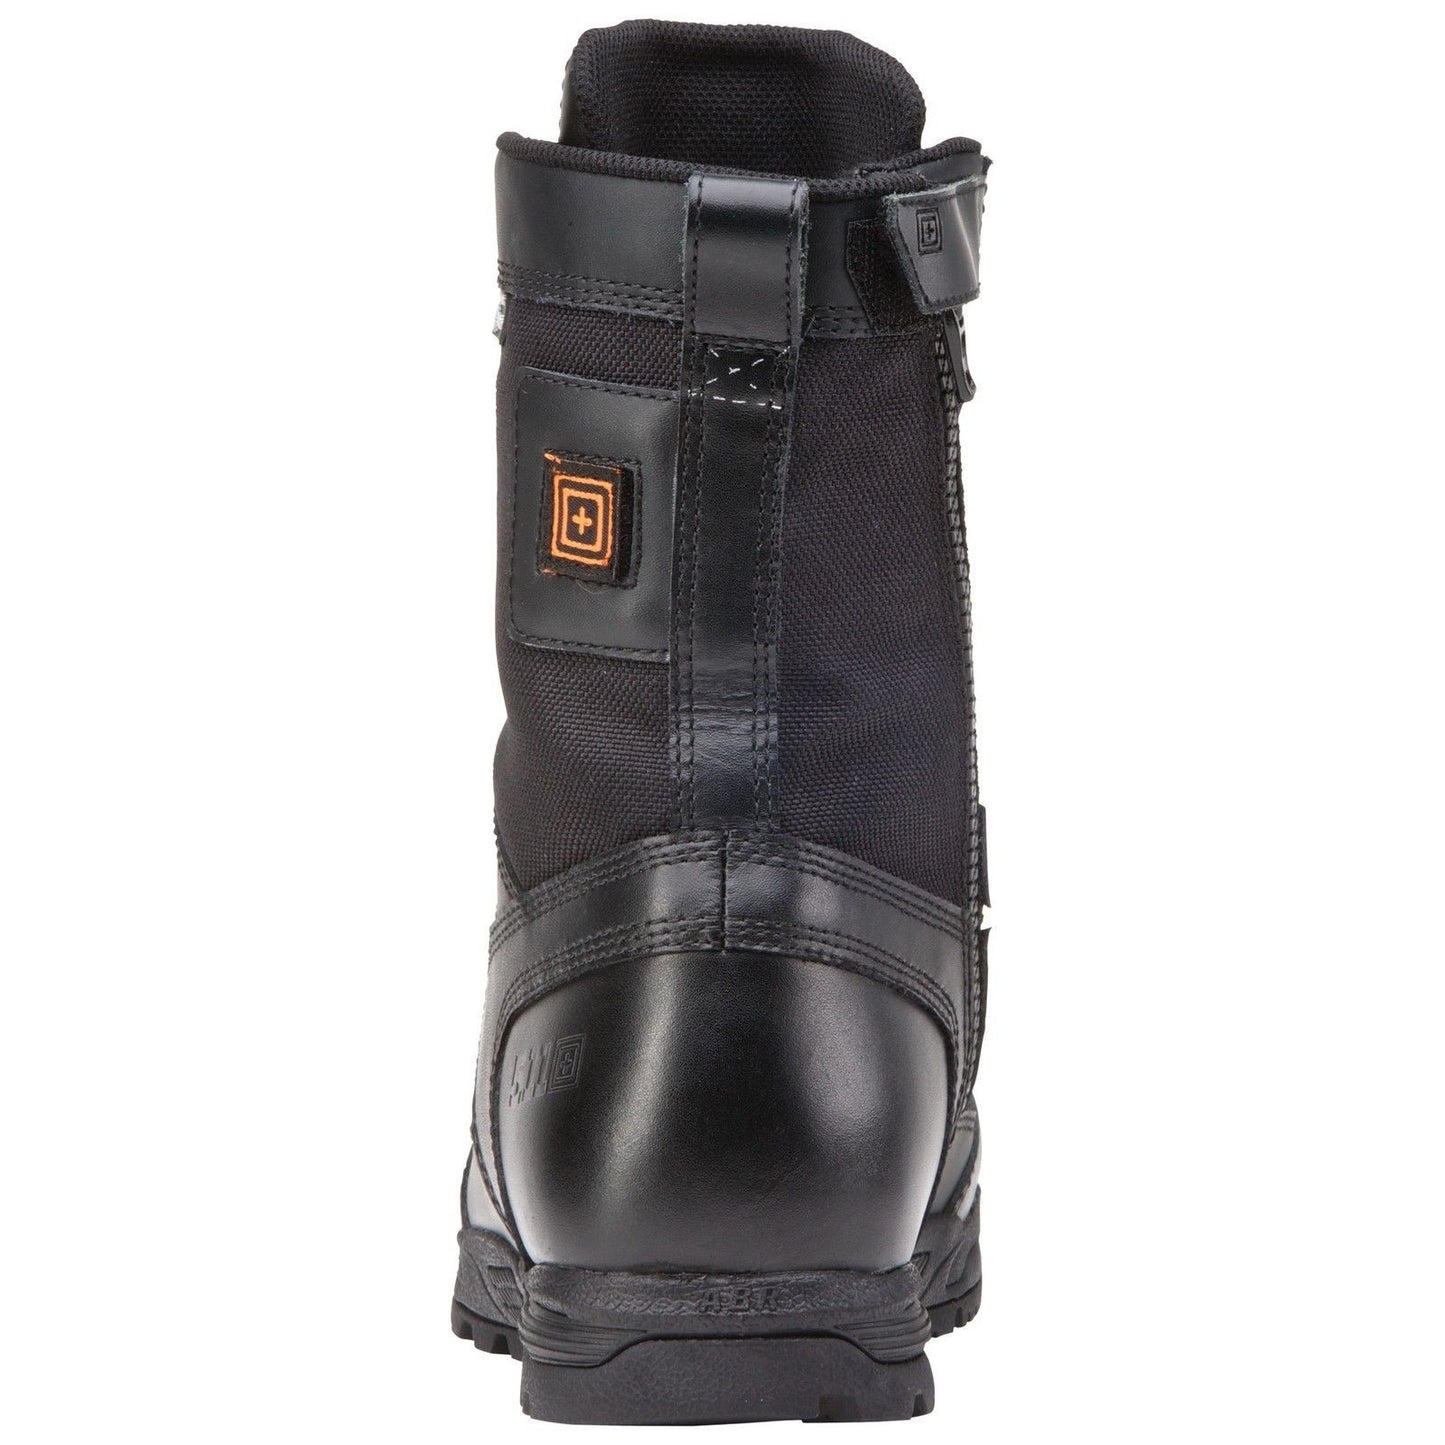 5.11 Tactical Black Skyweight Waterproof Side Zip Field Duty Work Boots